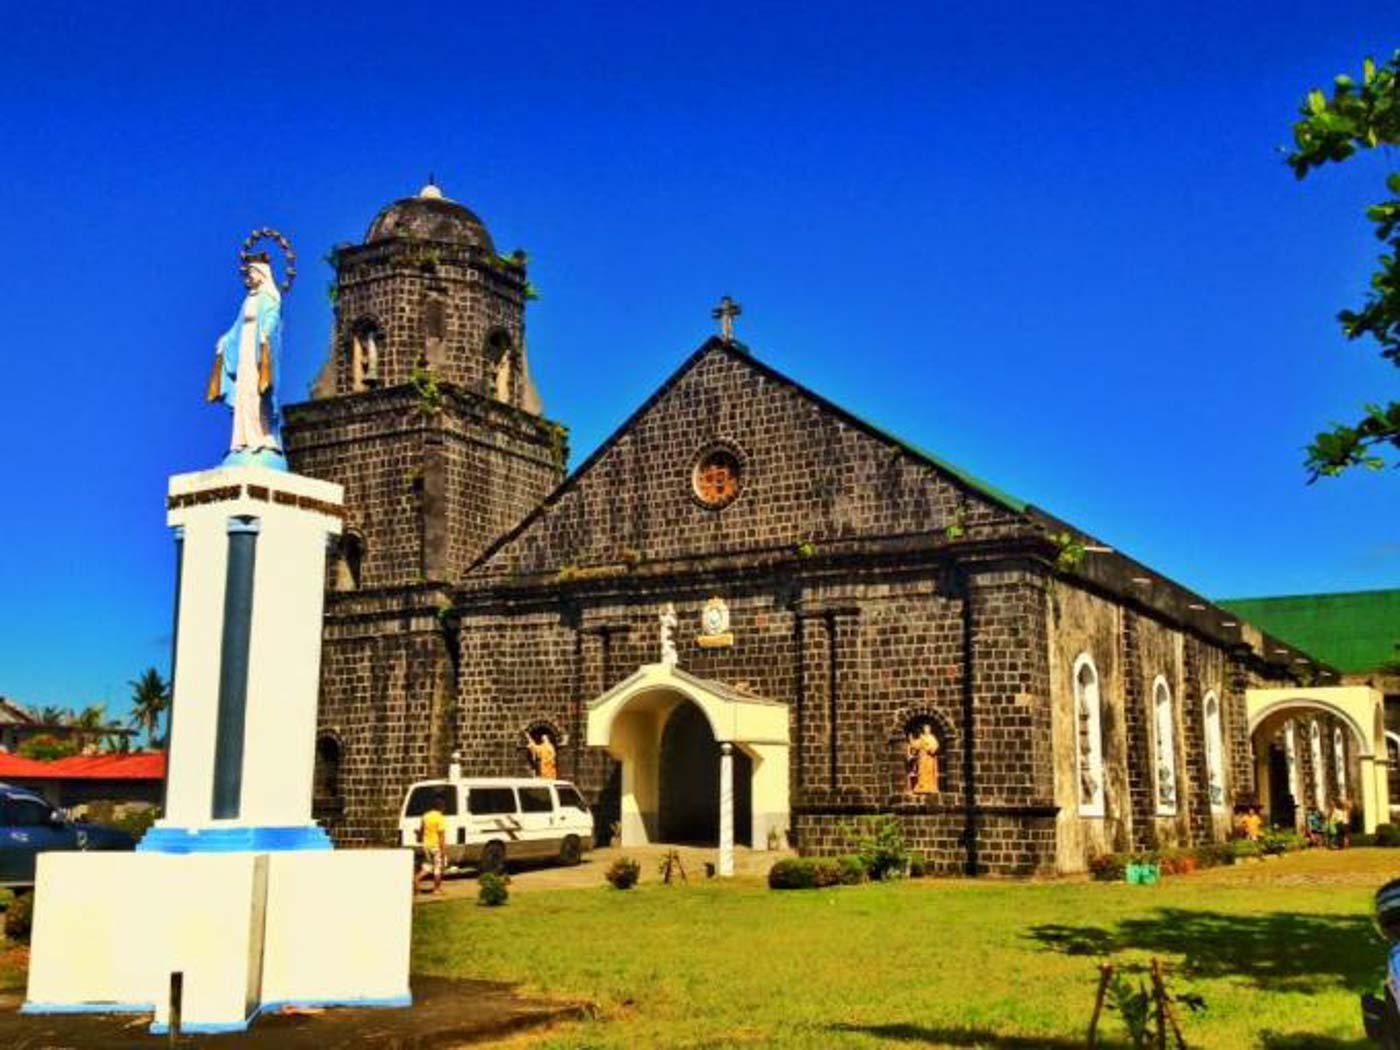 Touring Albay's churches through Visita Iglesia